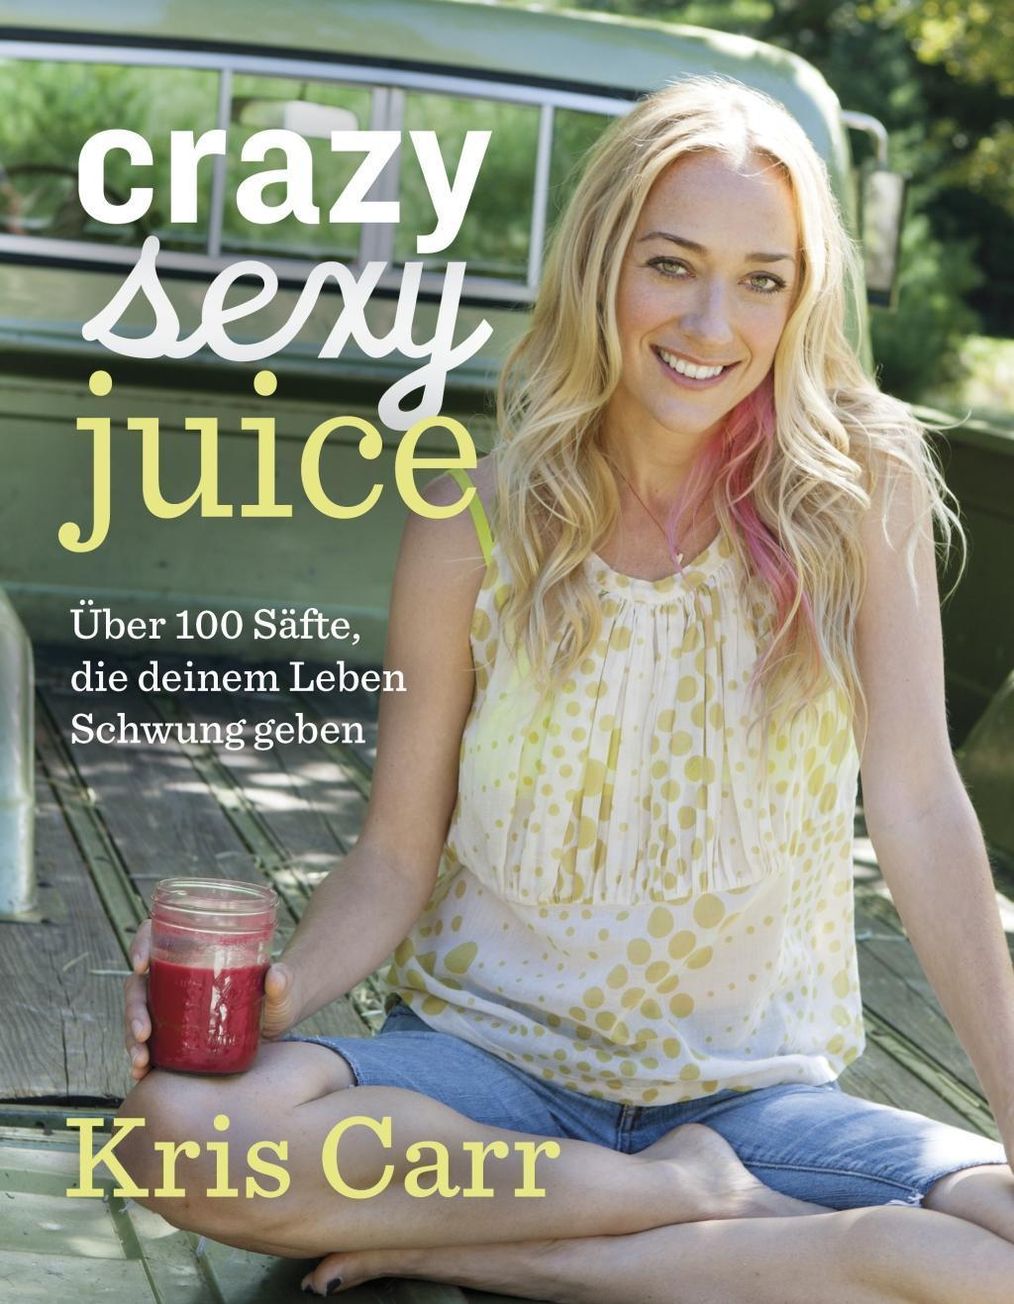 Crazy sexy juice Buch von Kris Carr versandkostenfrei bei Weltbild.de